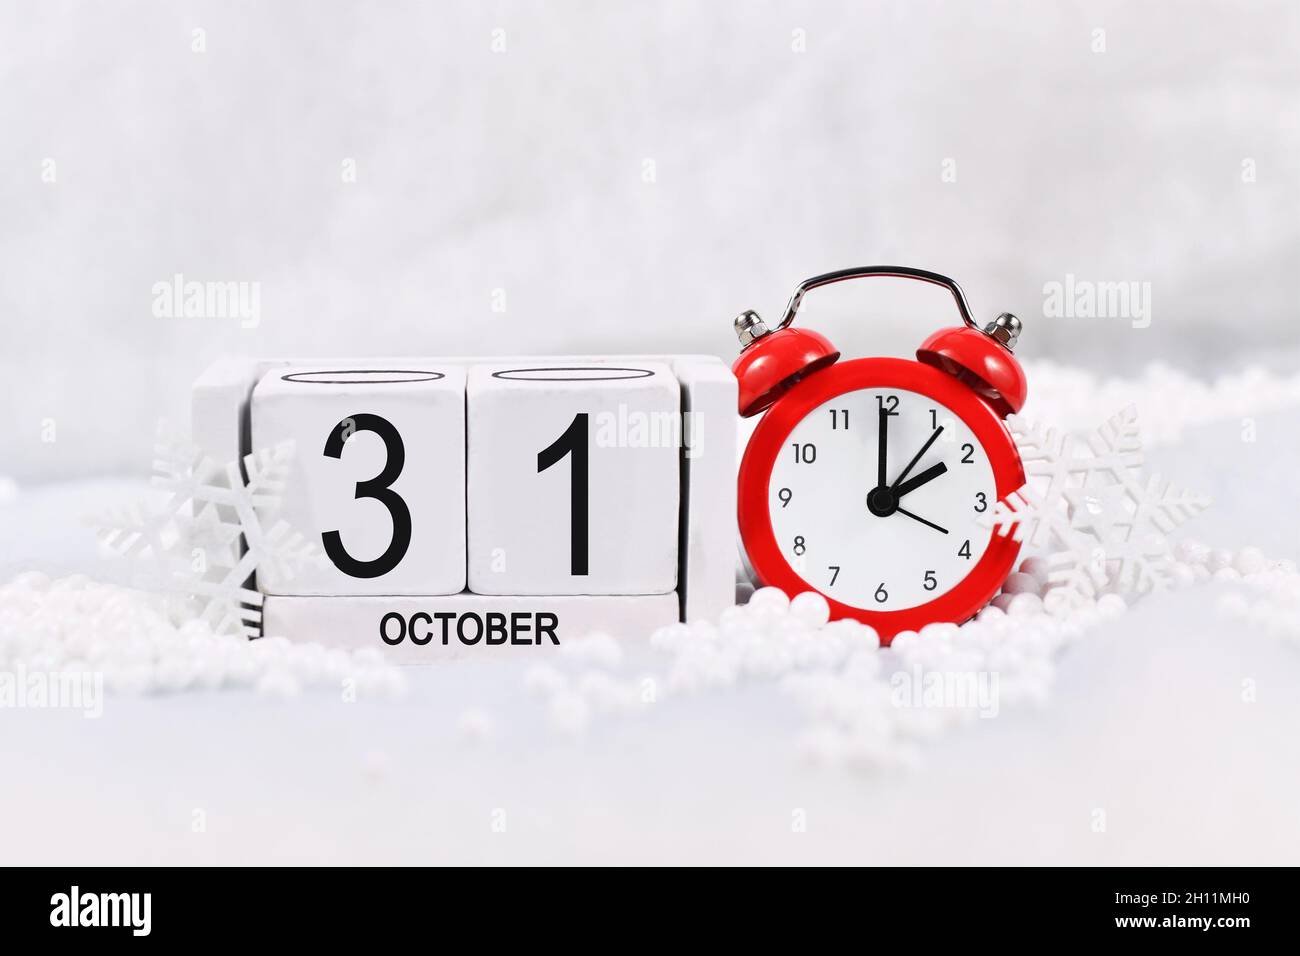 Concetto di cambio orario per l'ora legale in Europa il 31 ottobre con sveglia rossa e calendario nella neve Foto Stock